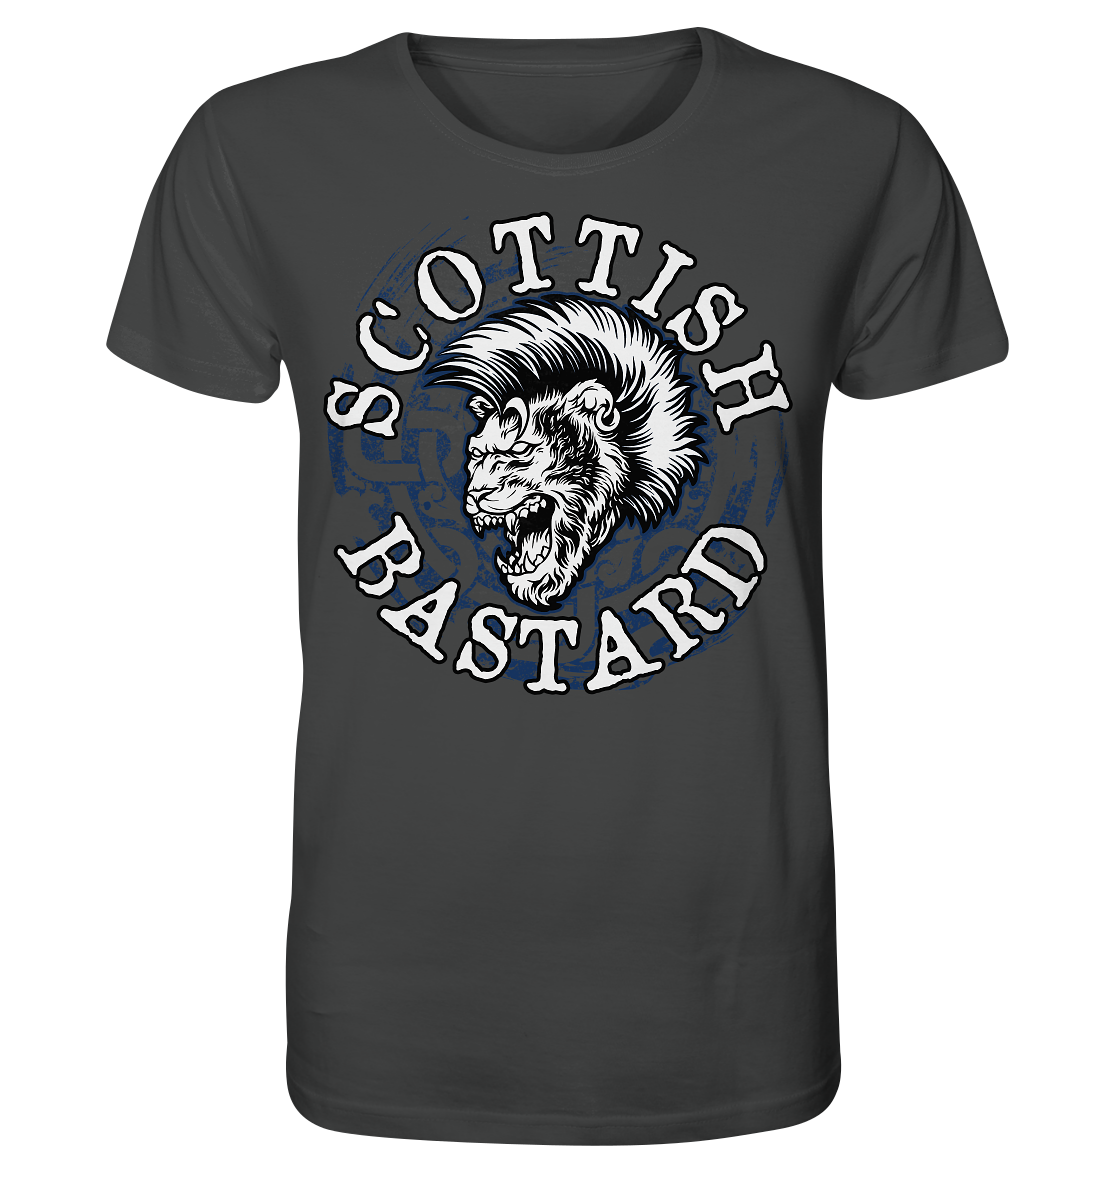 "Scottish Bastard" - Organic Shirt